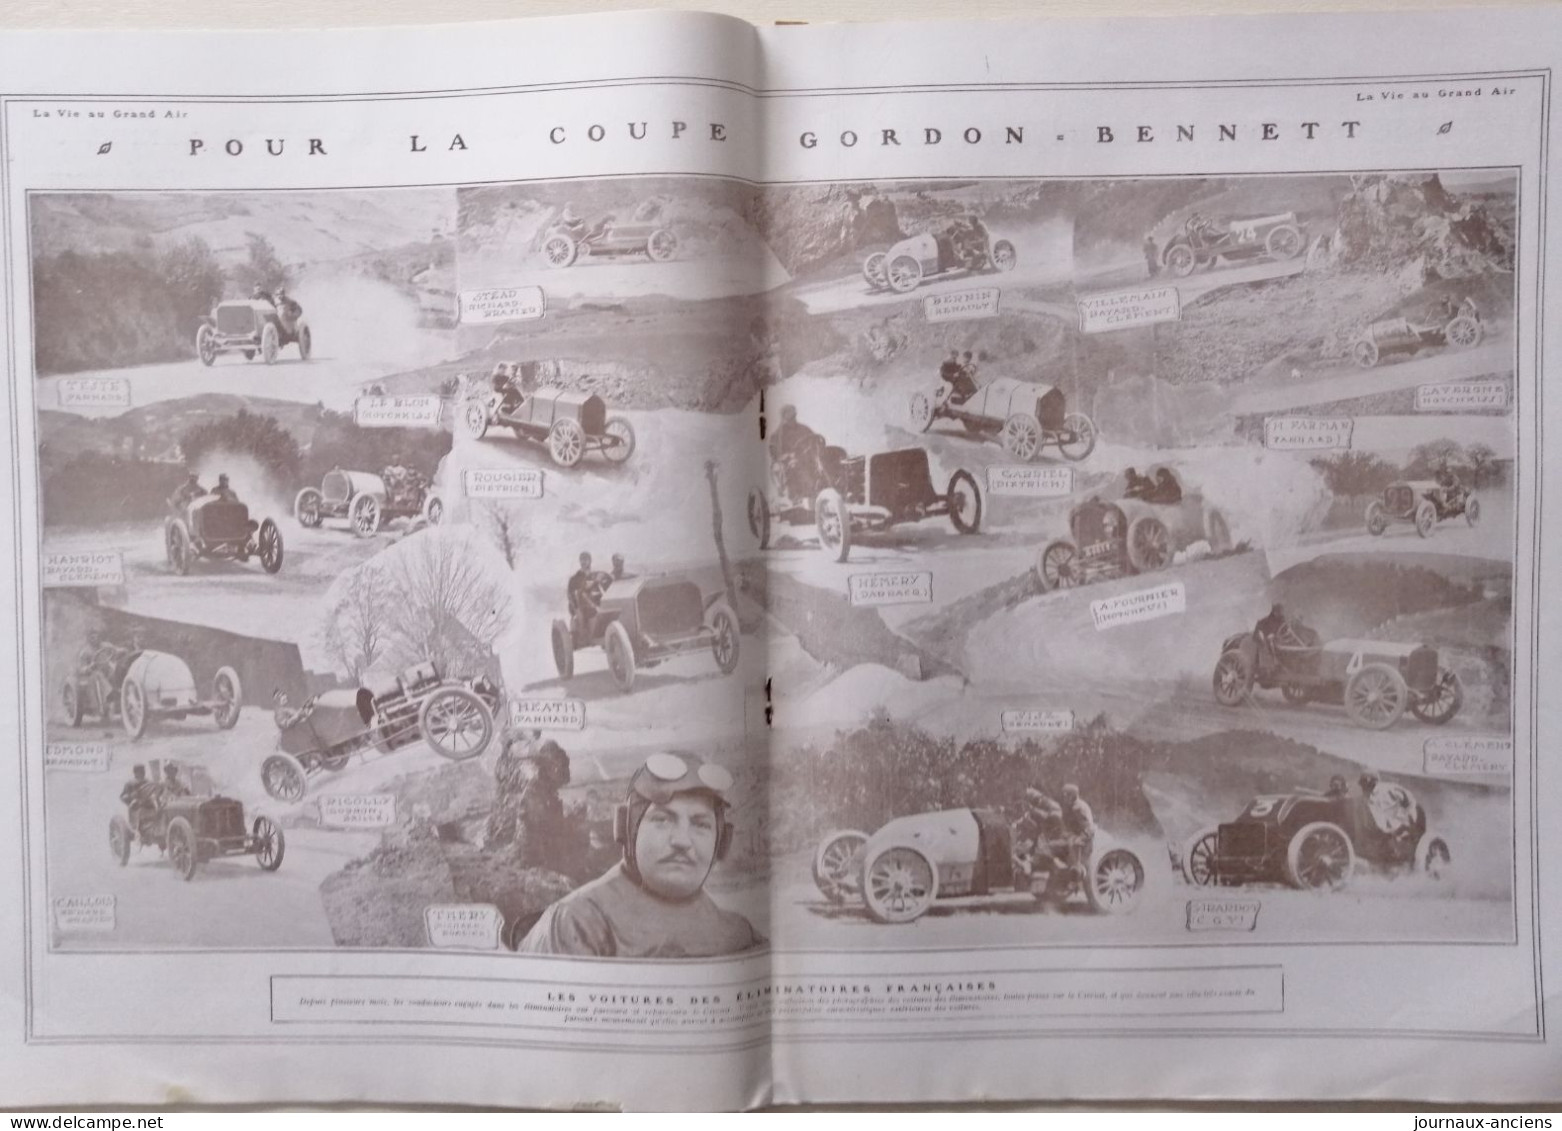 1905 COURSE AUTOMOBILE - LE CIRCUIT D'AUVERGNE - AVANT LA COUPE GORDON BENNETT - Revue Sportive " LA VIE AU GRAND AIR " - 1900 - 1949